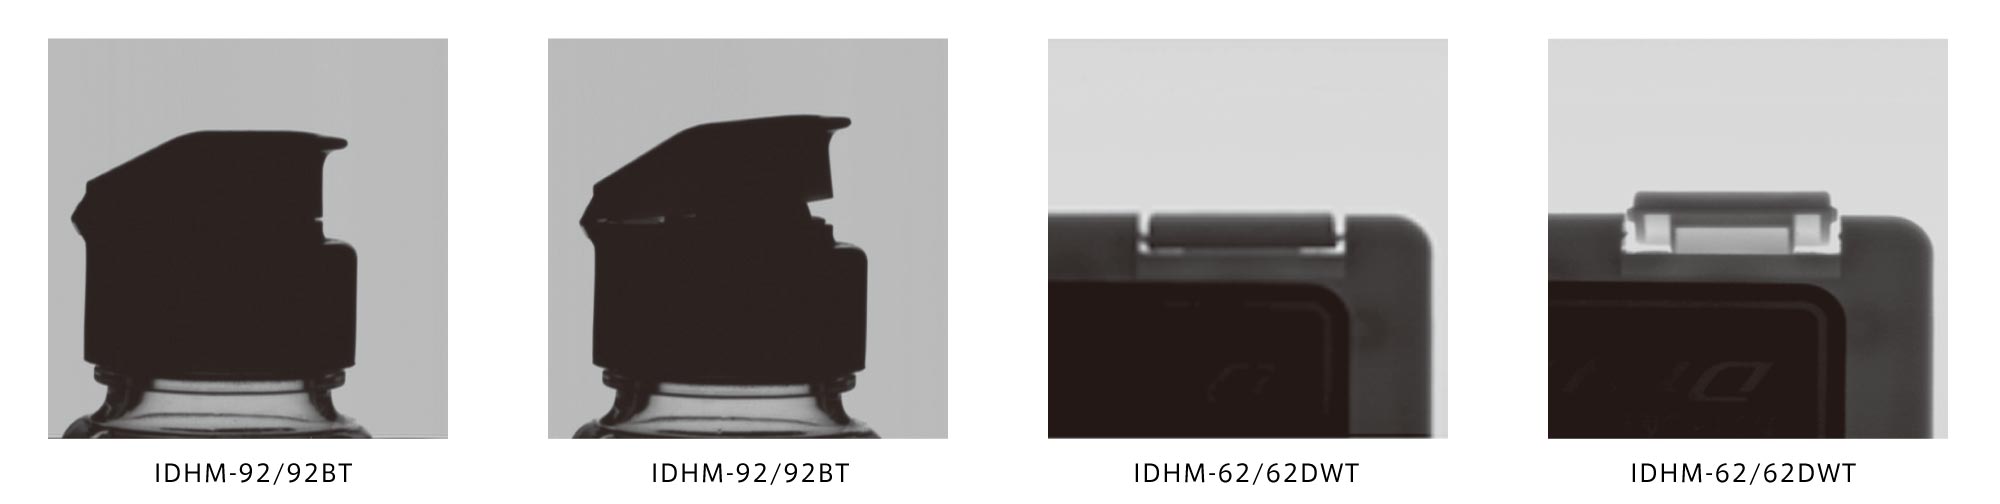 IDHM Product Description 01